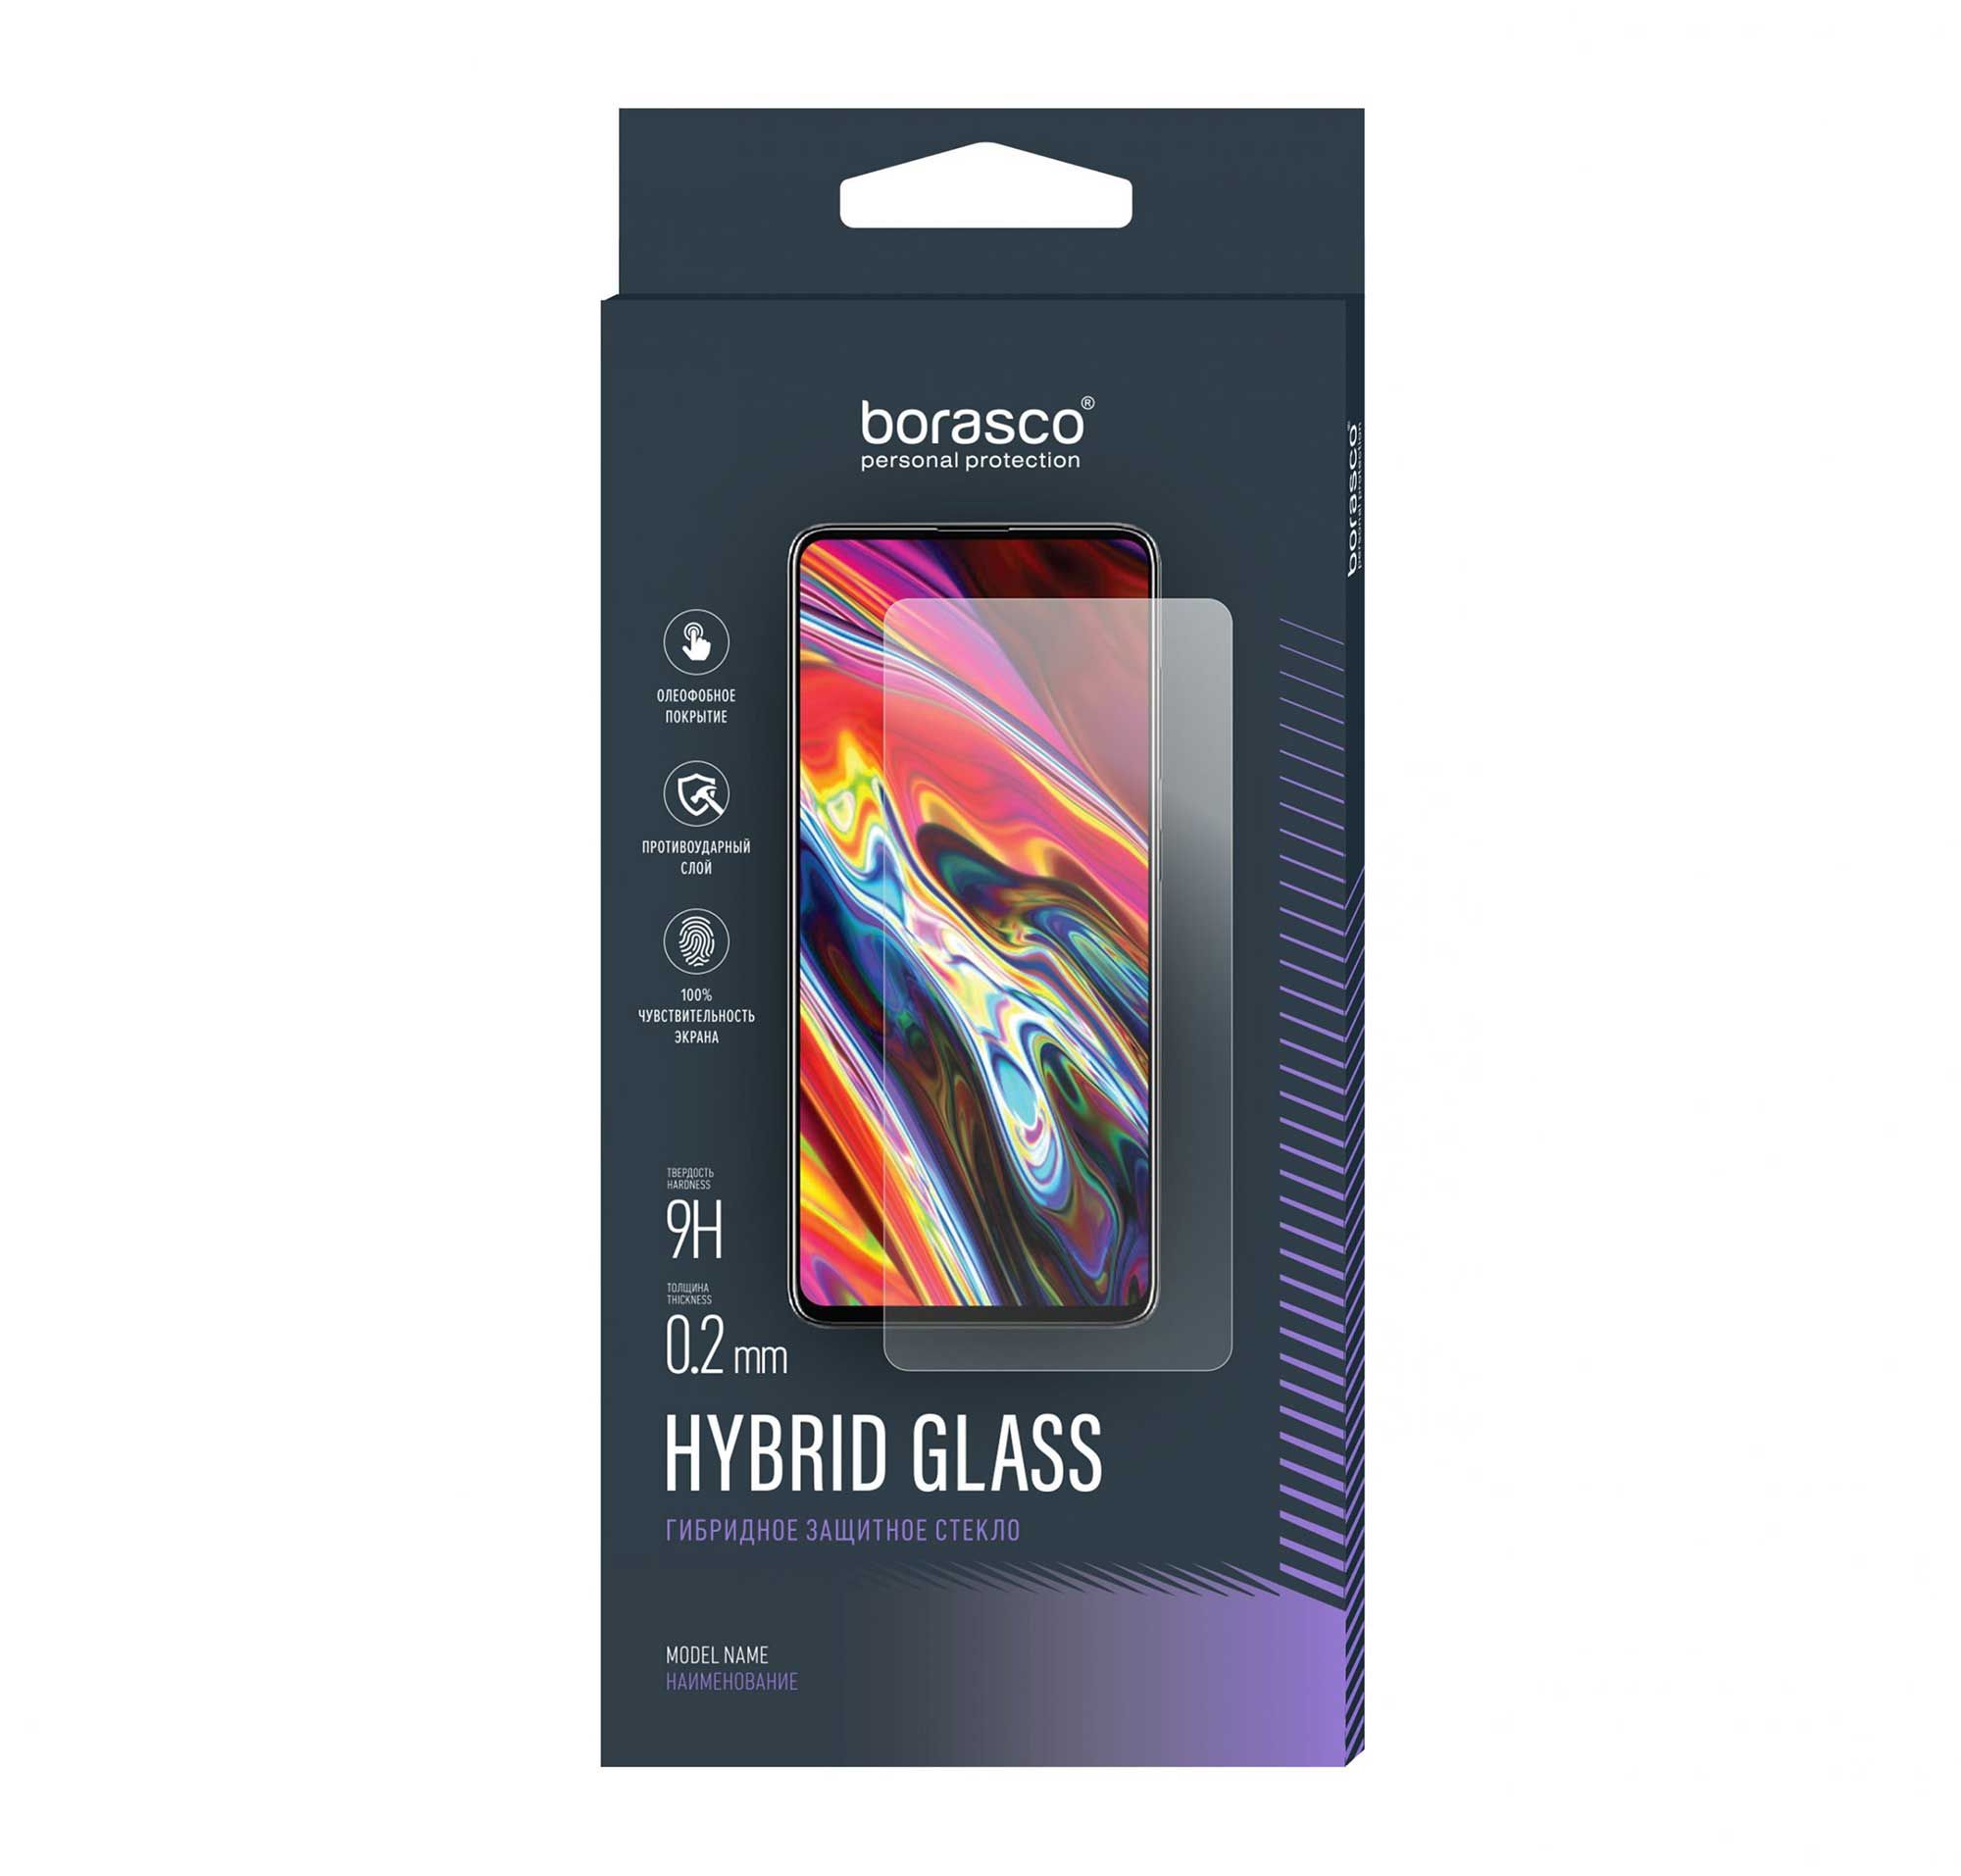 Защитное стекло Hybrid Glass для UMIDIGI BISON 2 чехол mypads persona 5 art для umidigi bison x10s bison x10g задняя панель накладка бампер